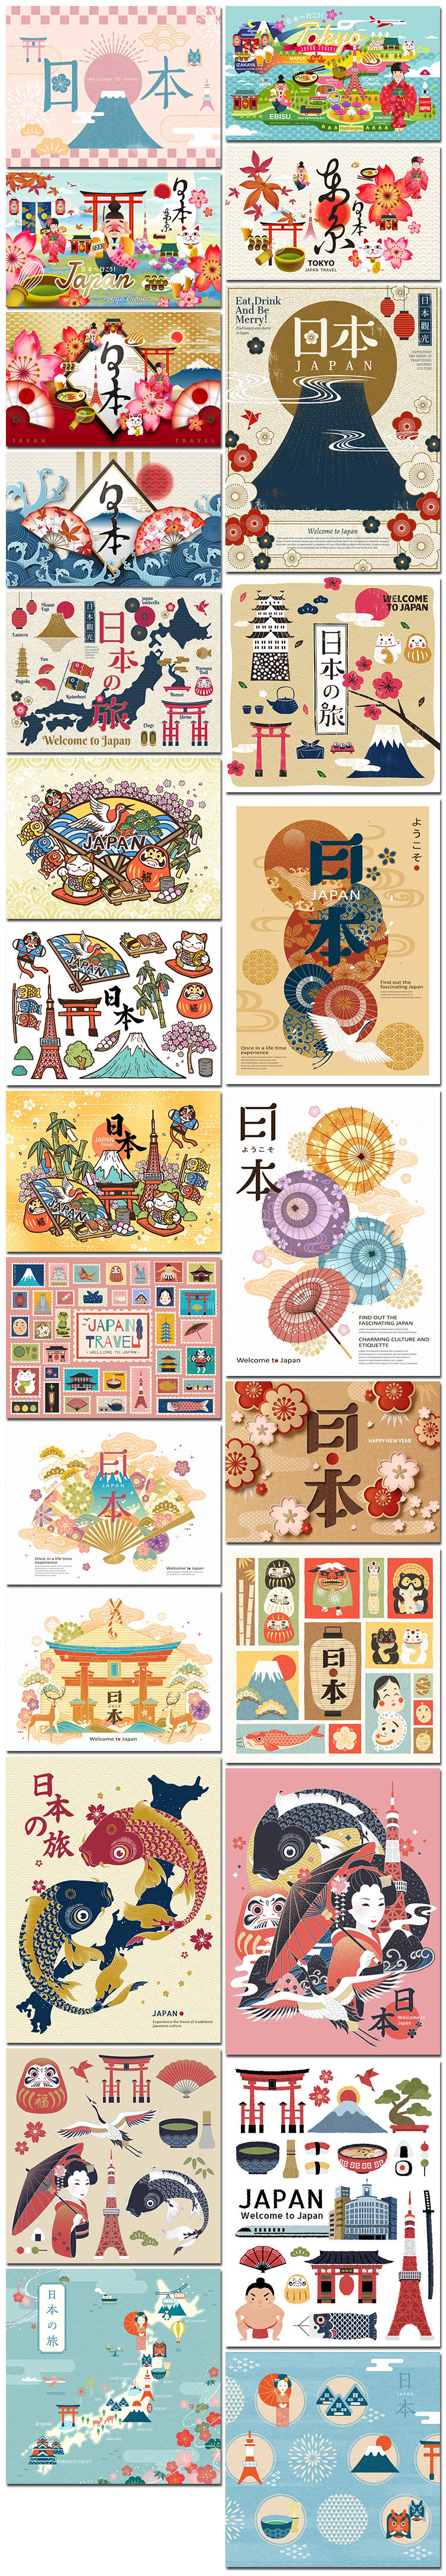 日本特色传统文化招财猫旅游行美食景点建筑海报矢量模板设计素材